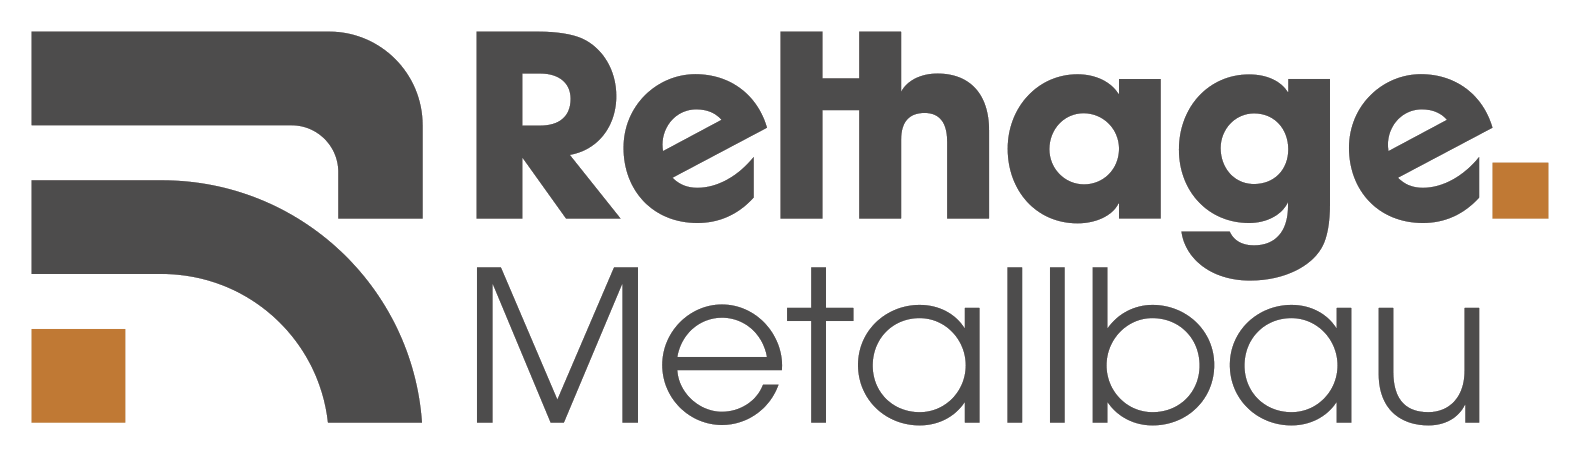 Rethage Metallbau GmbH